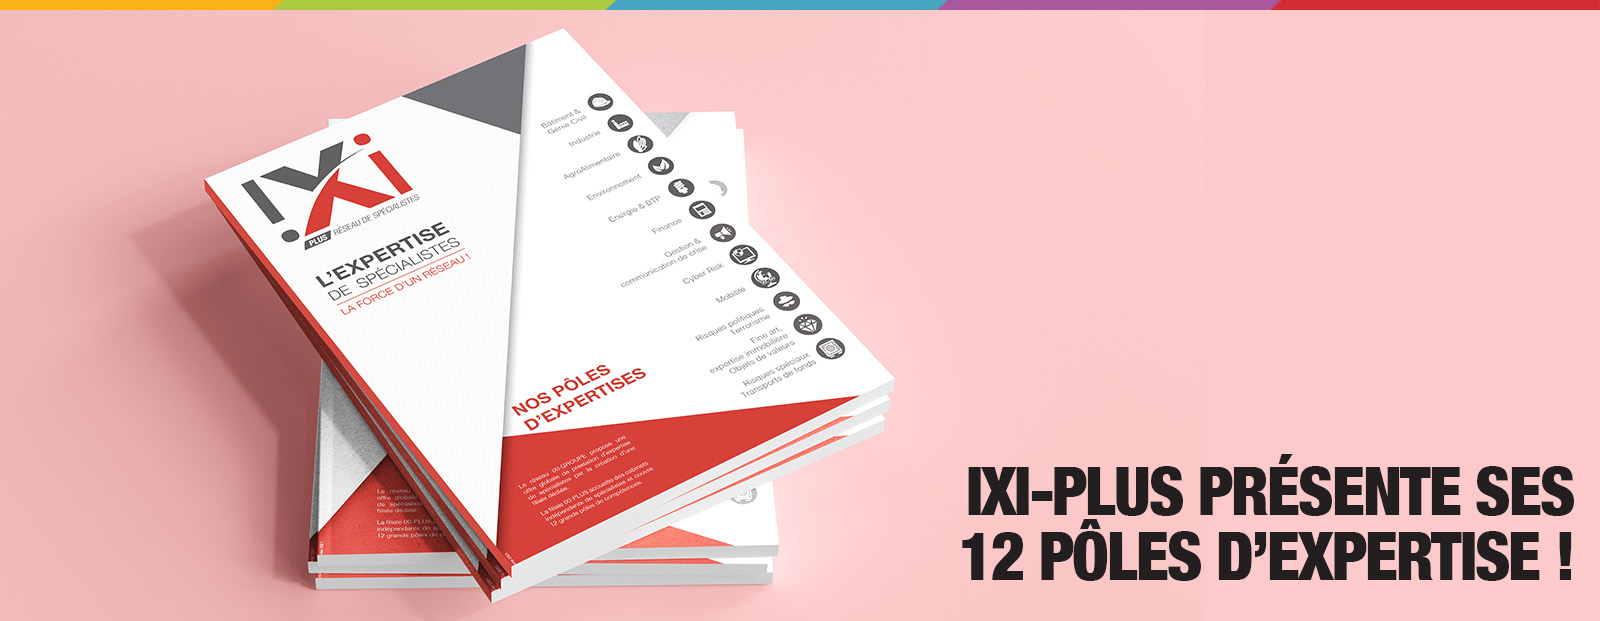 IXI-Plus présente ses 12 pôles d'expertises